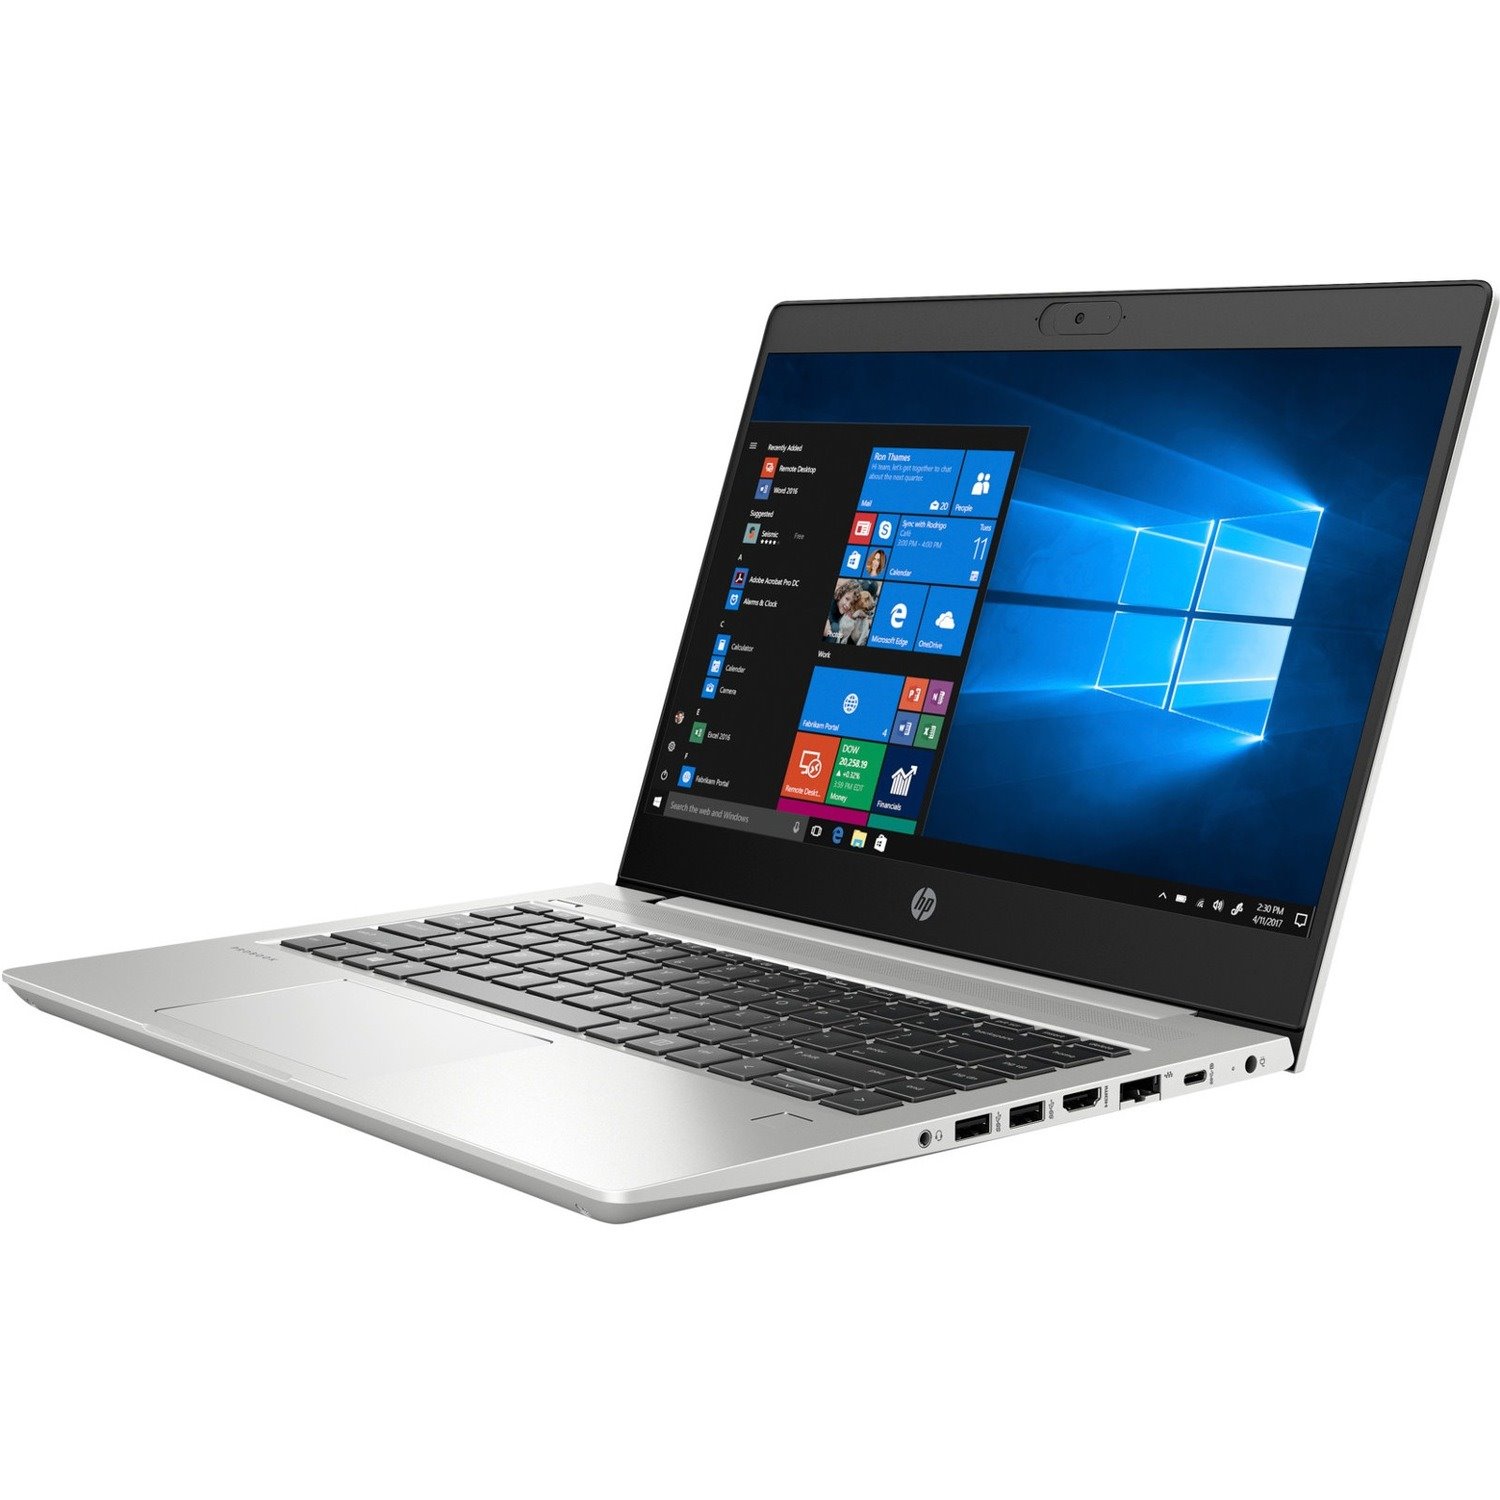 HP ProBook 440 G7 35.6 cm (14") Notebook - Full HD - 1920 x 1080 - Intel Core i5 10th Gen i5-10210U Quad-core (4 Core) 1.60 GHz - 8 GB Total RAM - 256 GB SSD - Pike Silver Aluminum